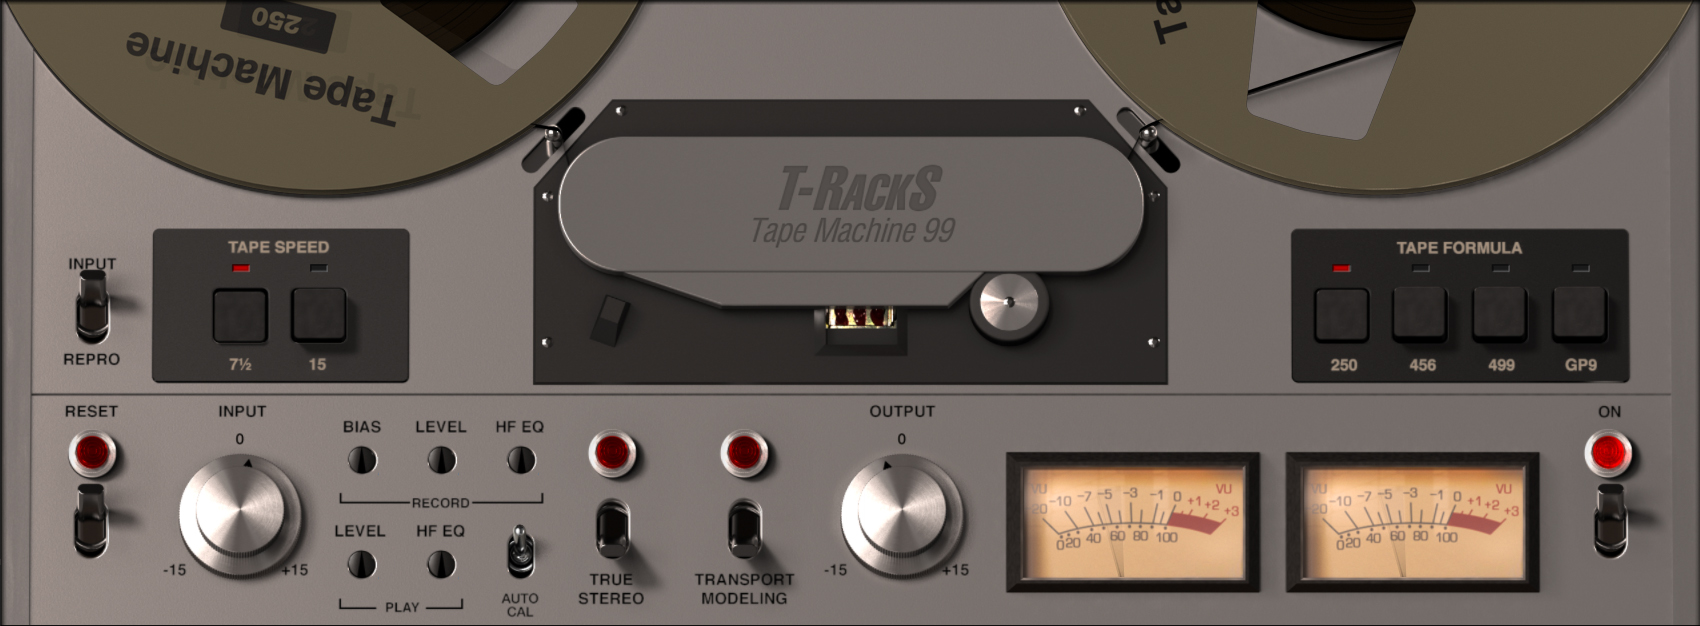 T-RackS Tape Machine 99